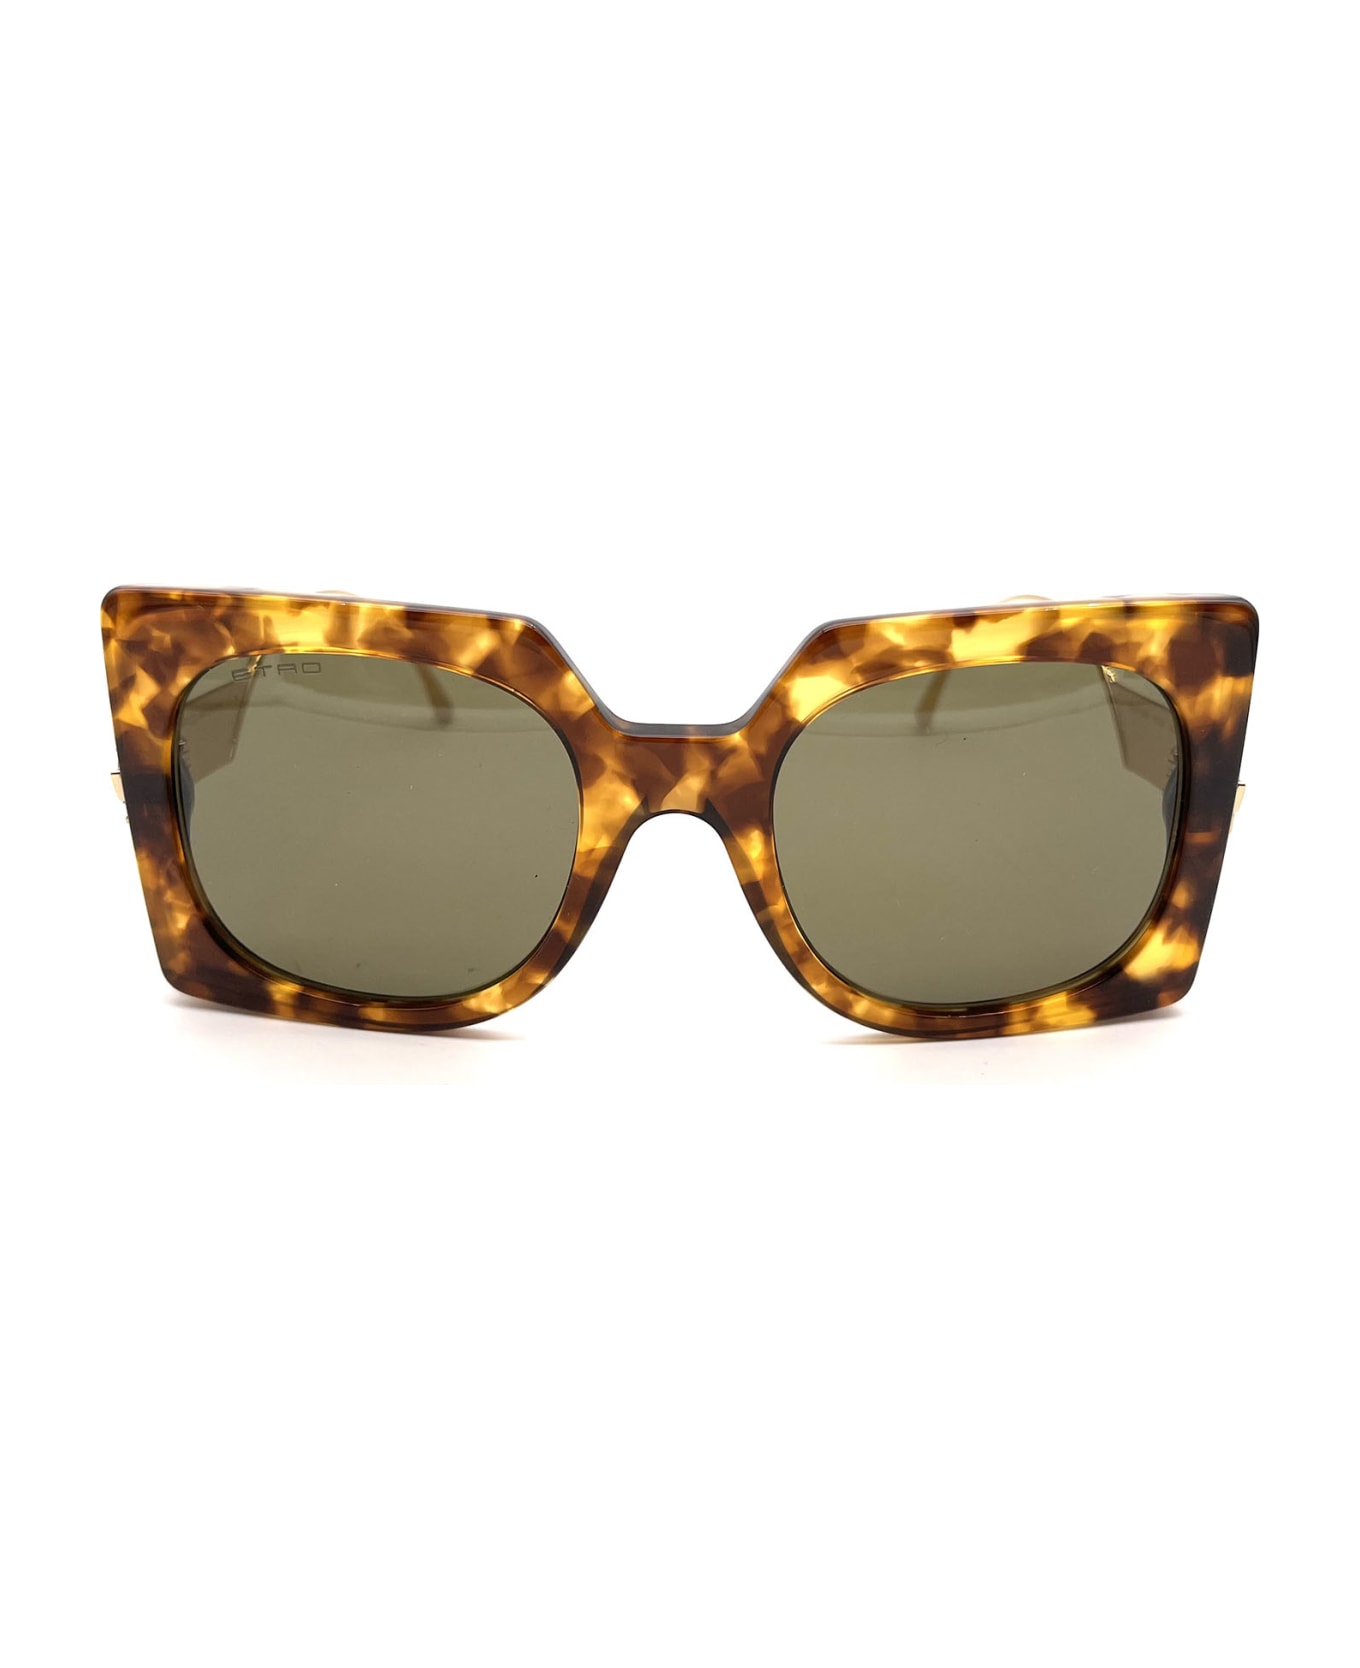 Etro 0026/S Sunglasses - Yellow Havana